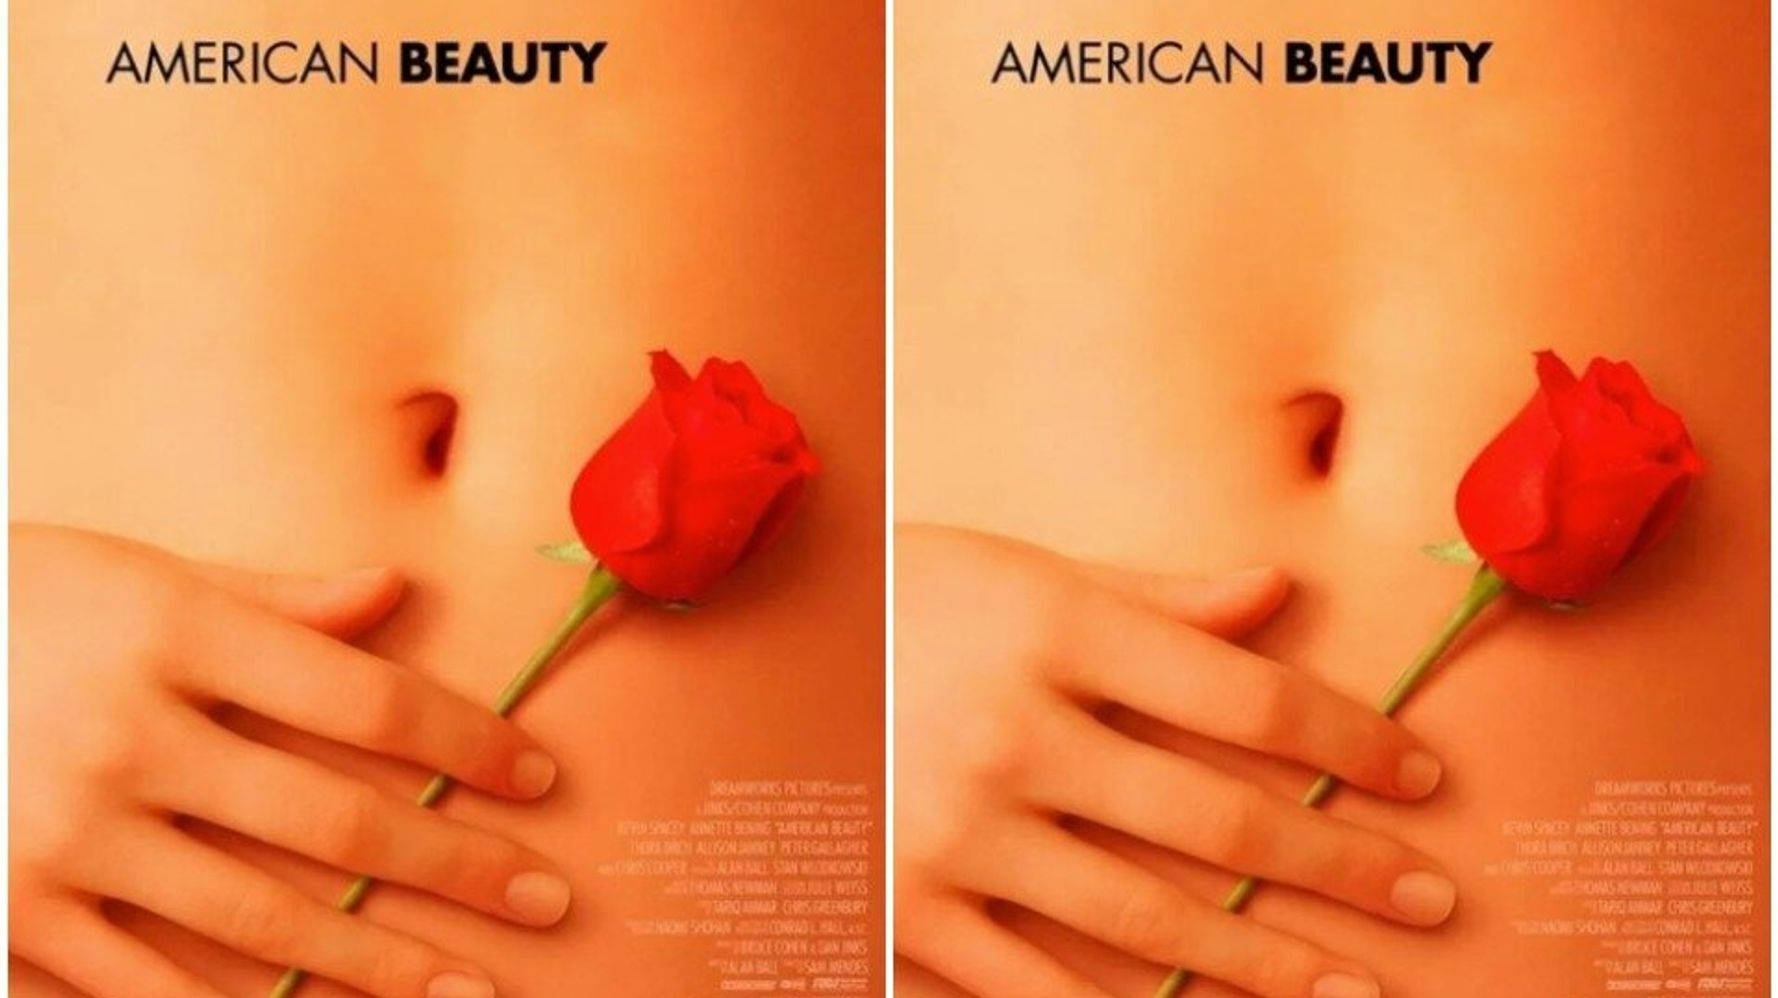 Christinahendricks Amerikansk Skönhet Poster. Wallpaper